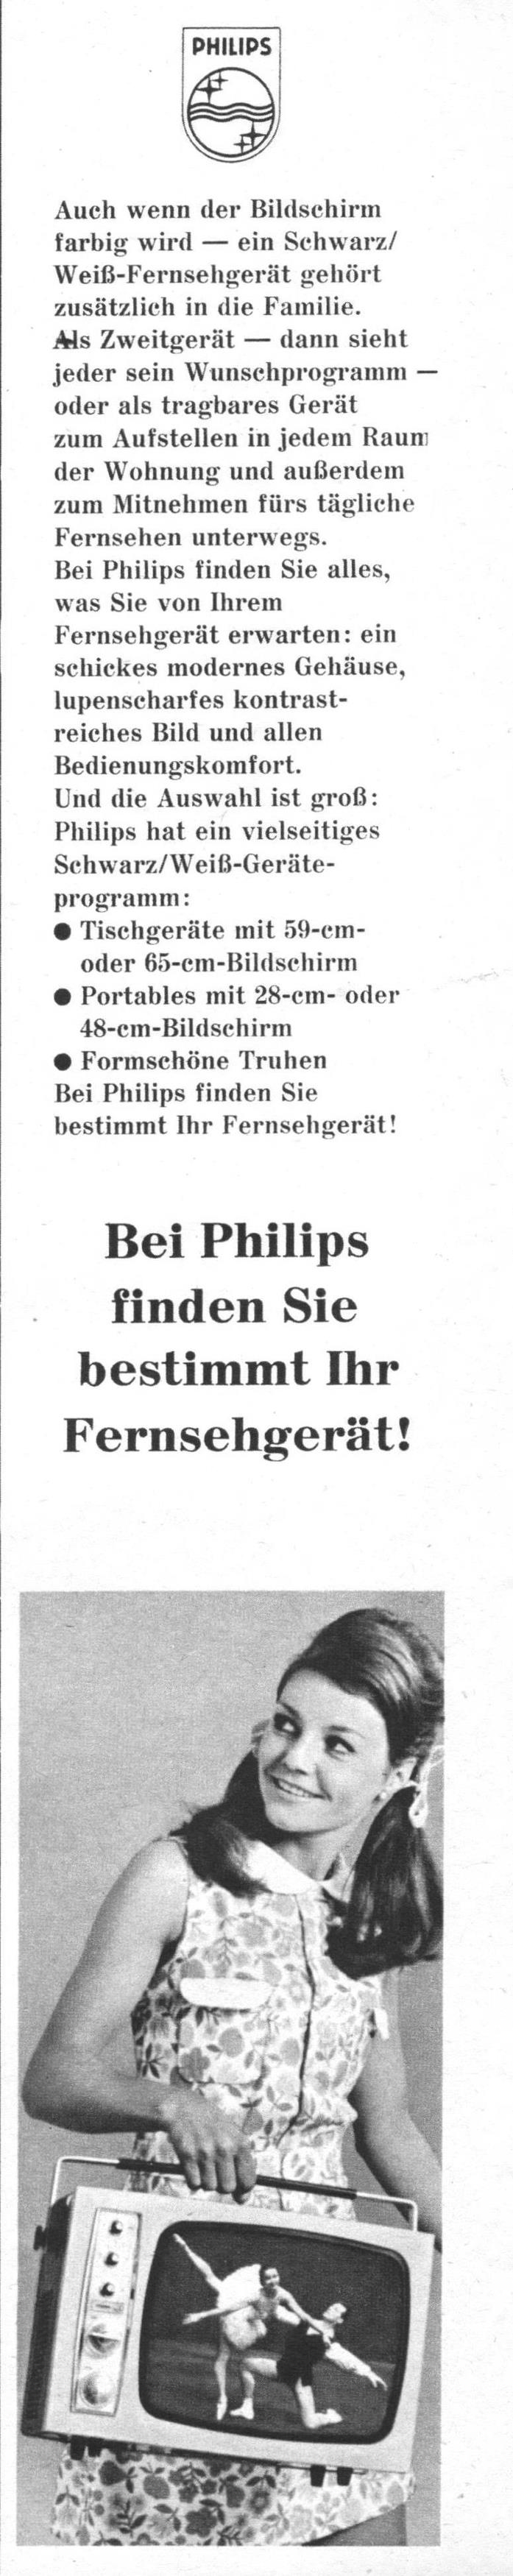 Philips 1967 1.jpg